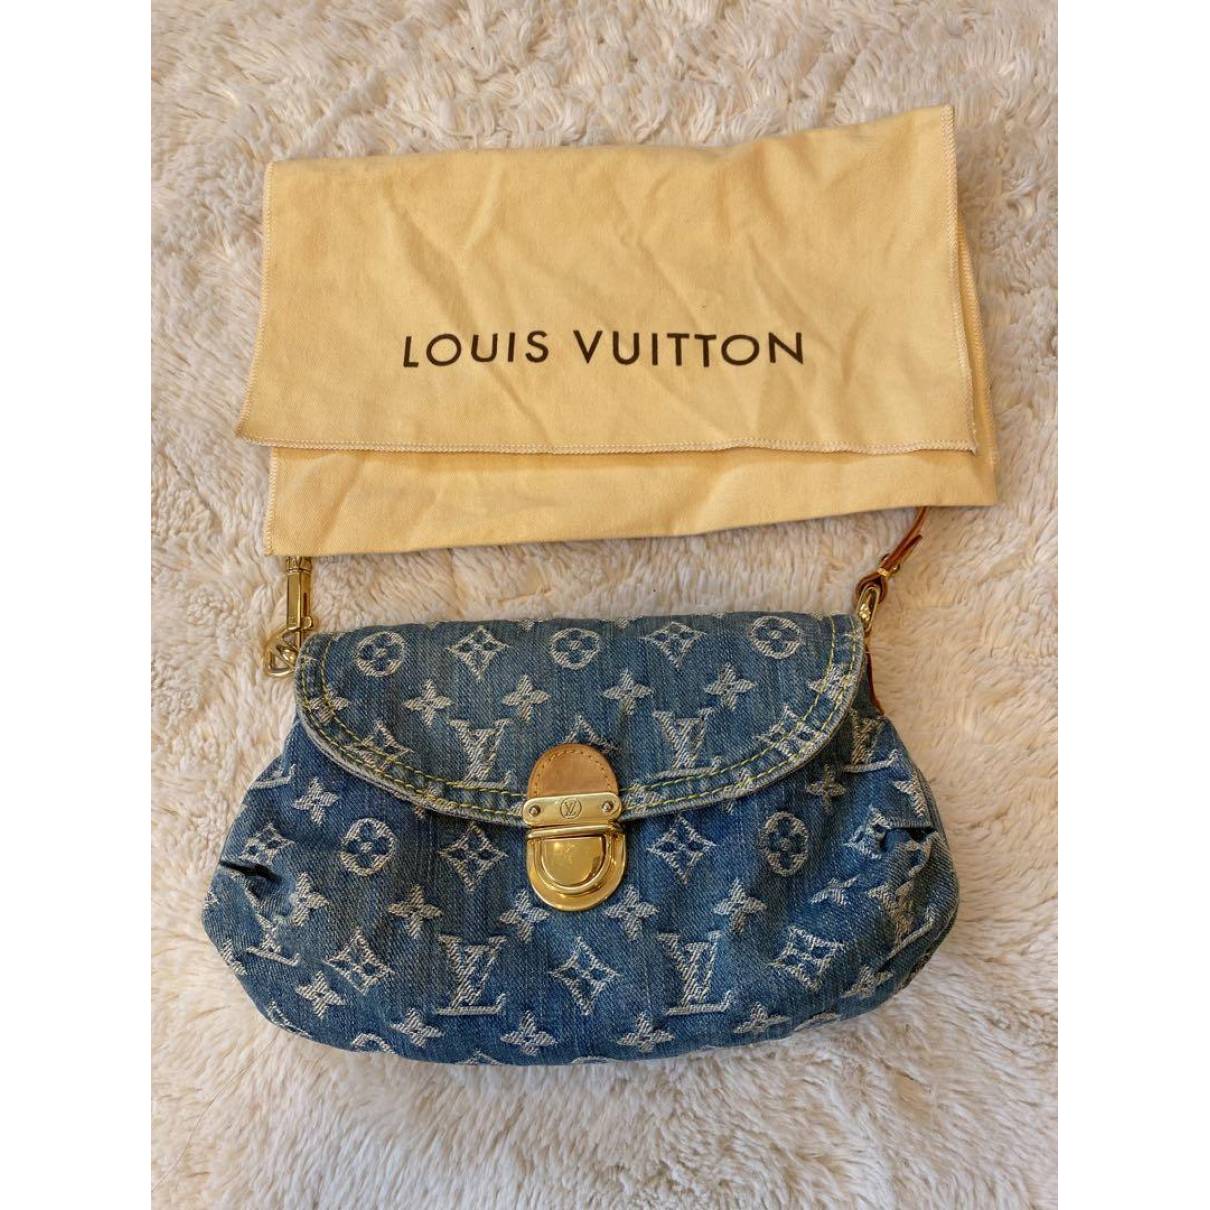 Pleaty handbag Louis Vuitton Blue in Denim - Jeans - 31757974